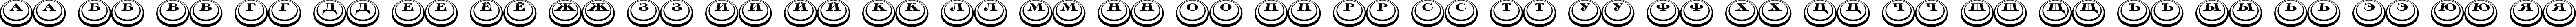 Пример написания русского алфавита шрифтом a_DiscoSerifDblDn3D